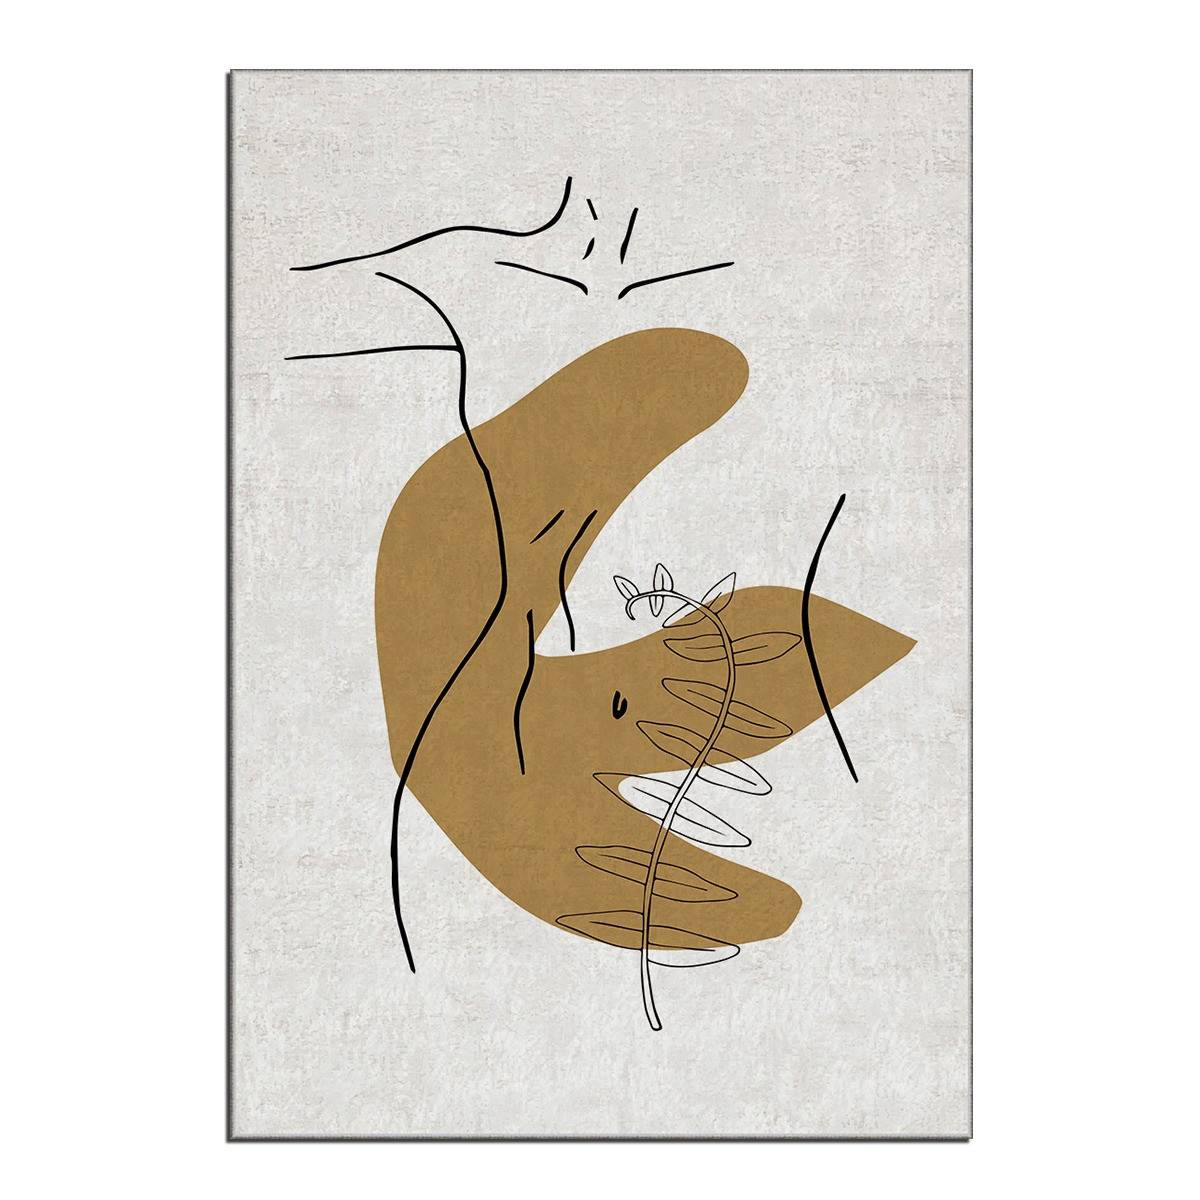 Alfombra Eben 100x140cm Motivo abstracto con silueta de mujer y mancha de mostaza